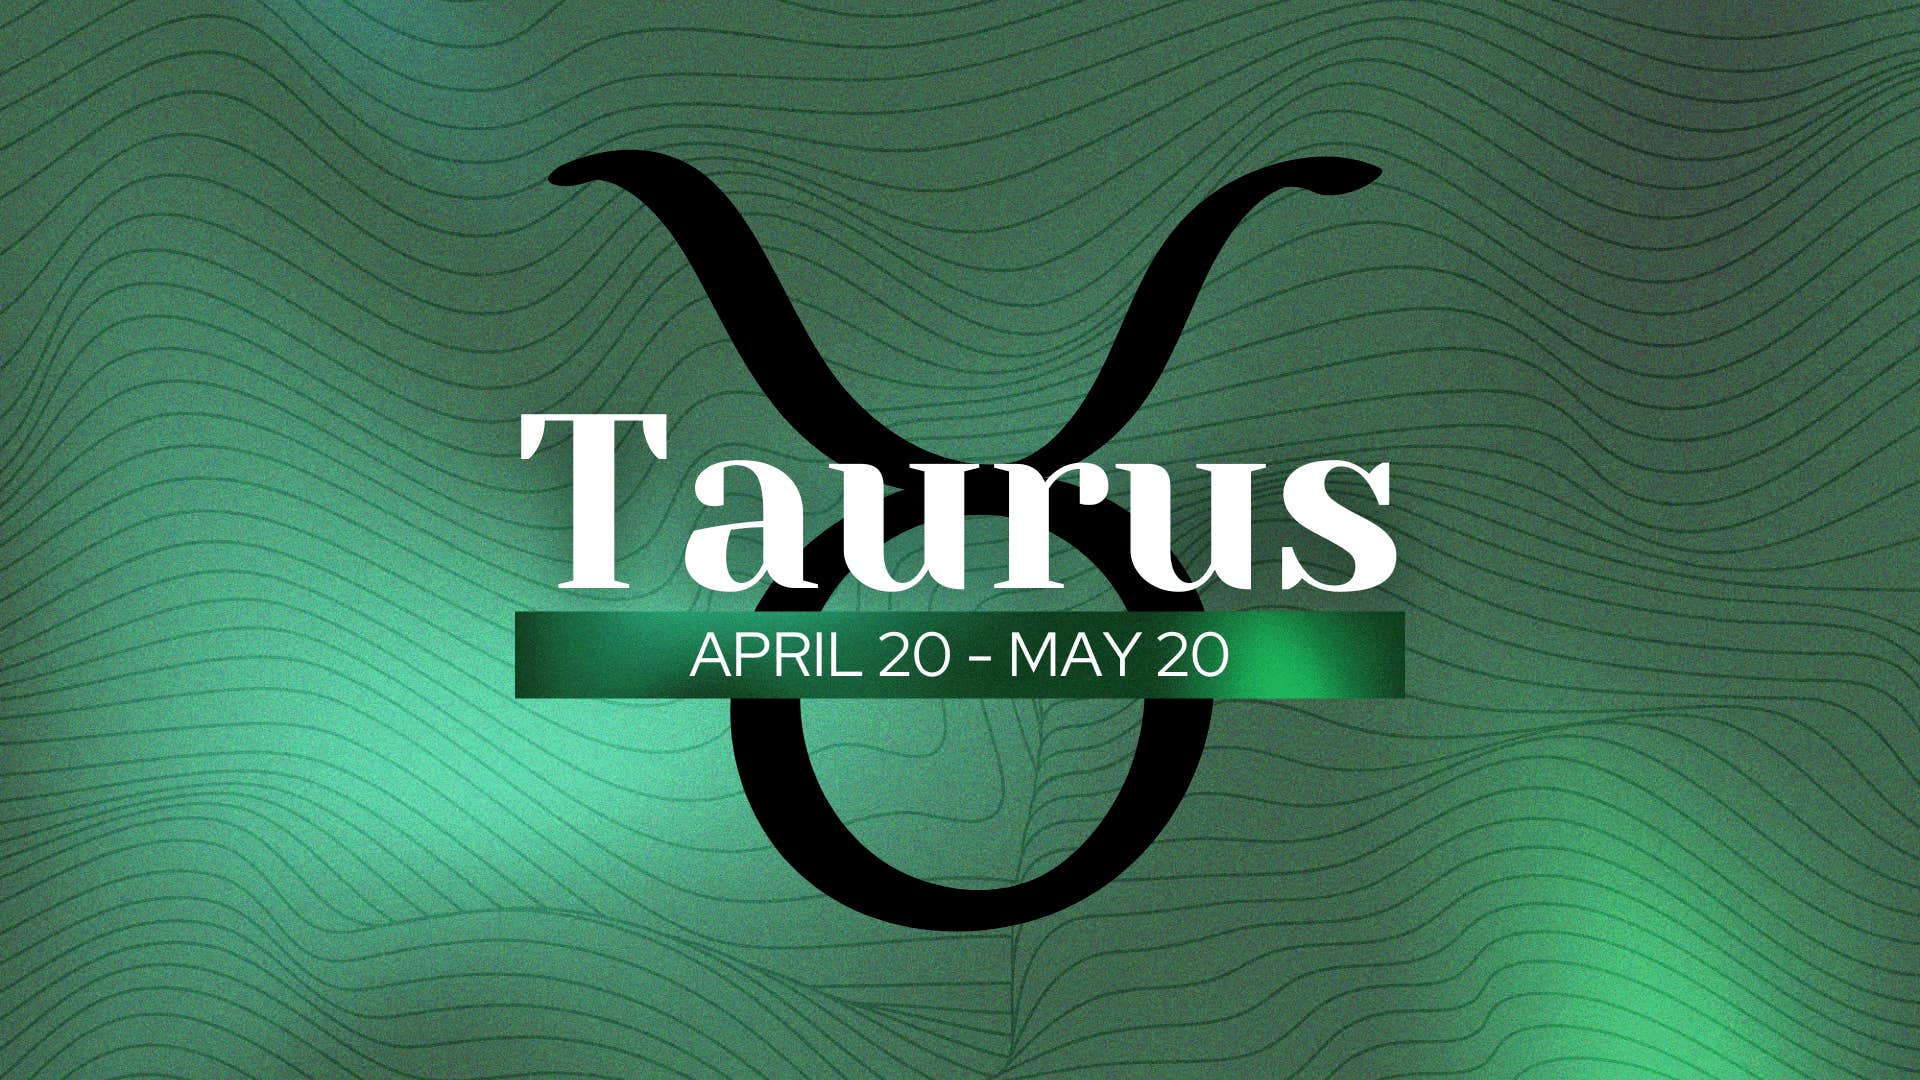 what makes taurus uniquely special